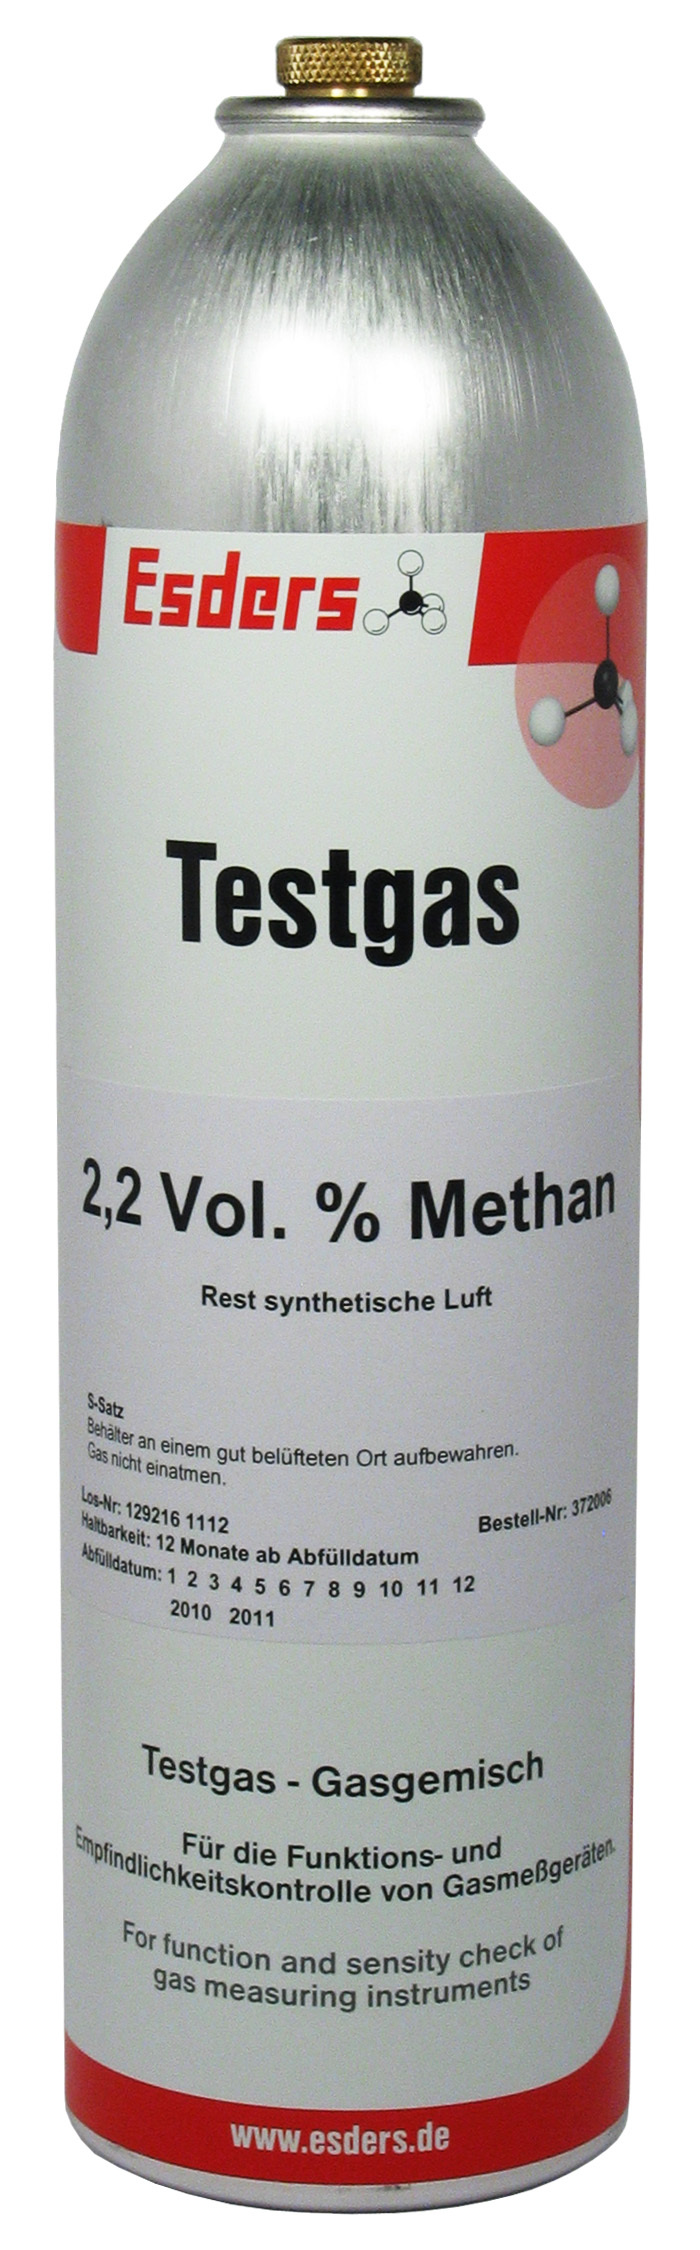 Test gas can 2,2 Vol.% methane